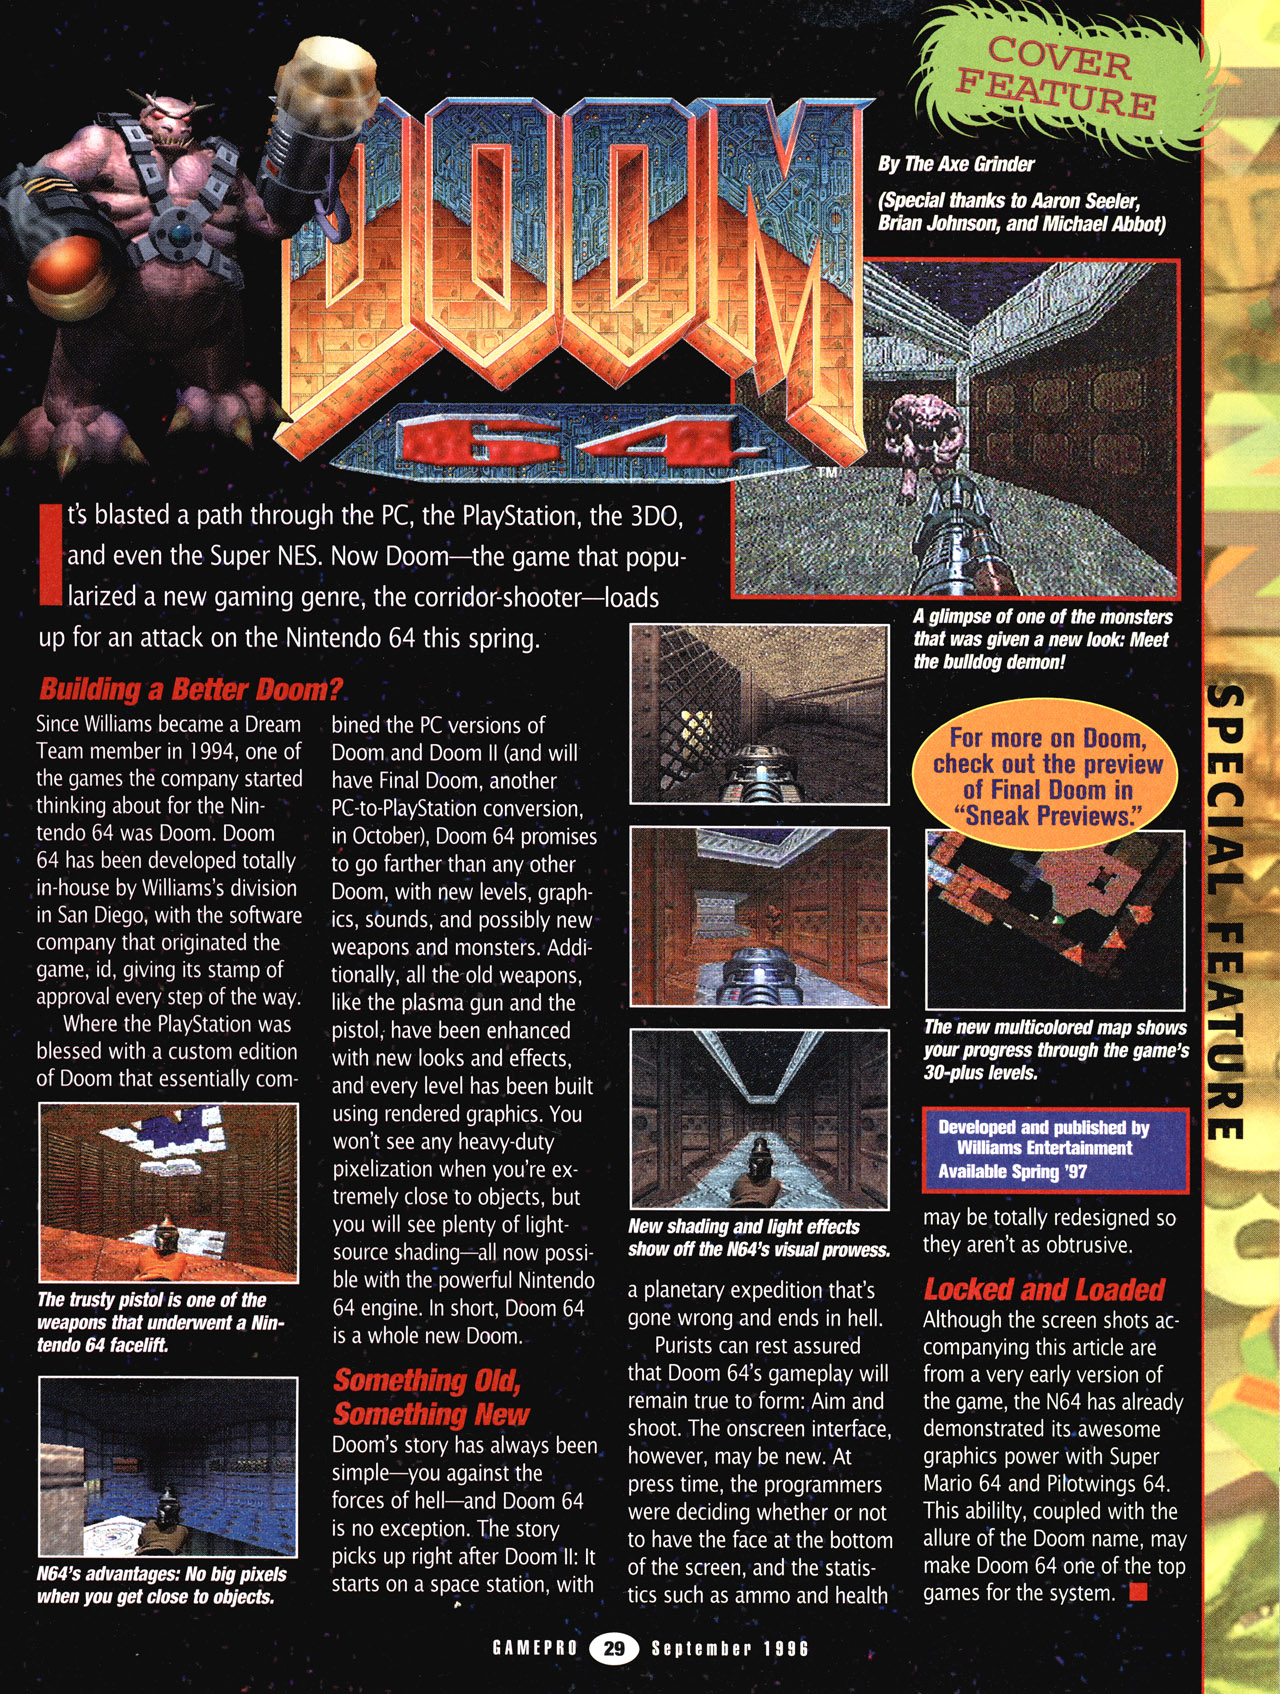 gamepro_issue086_september_1996-031.jpg